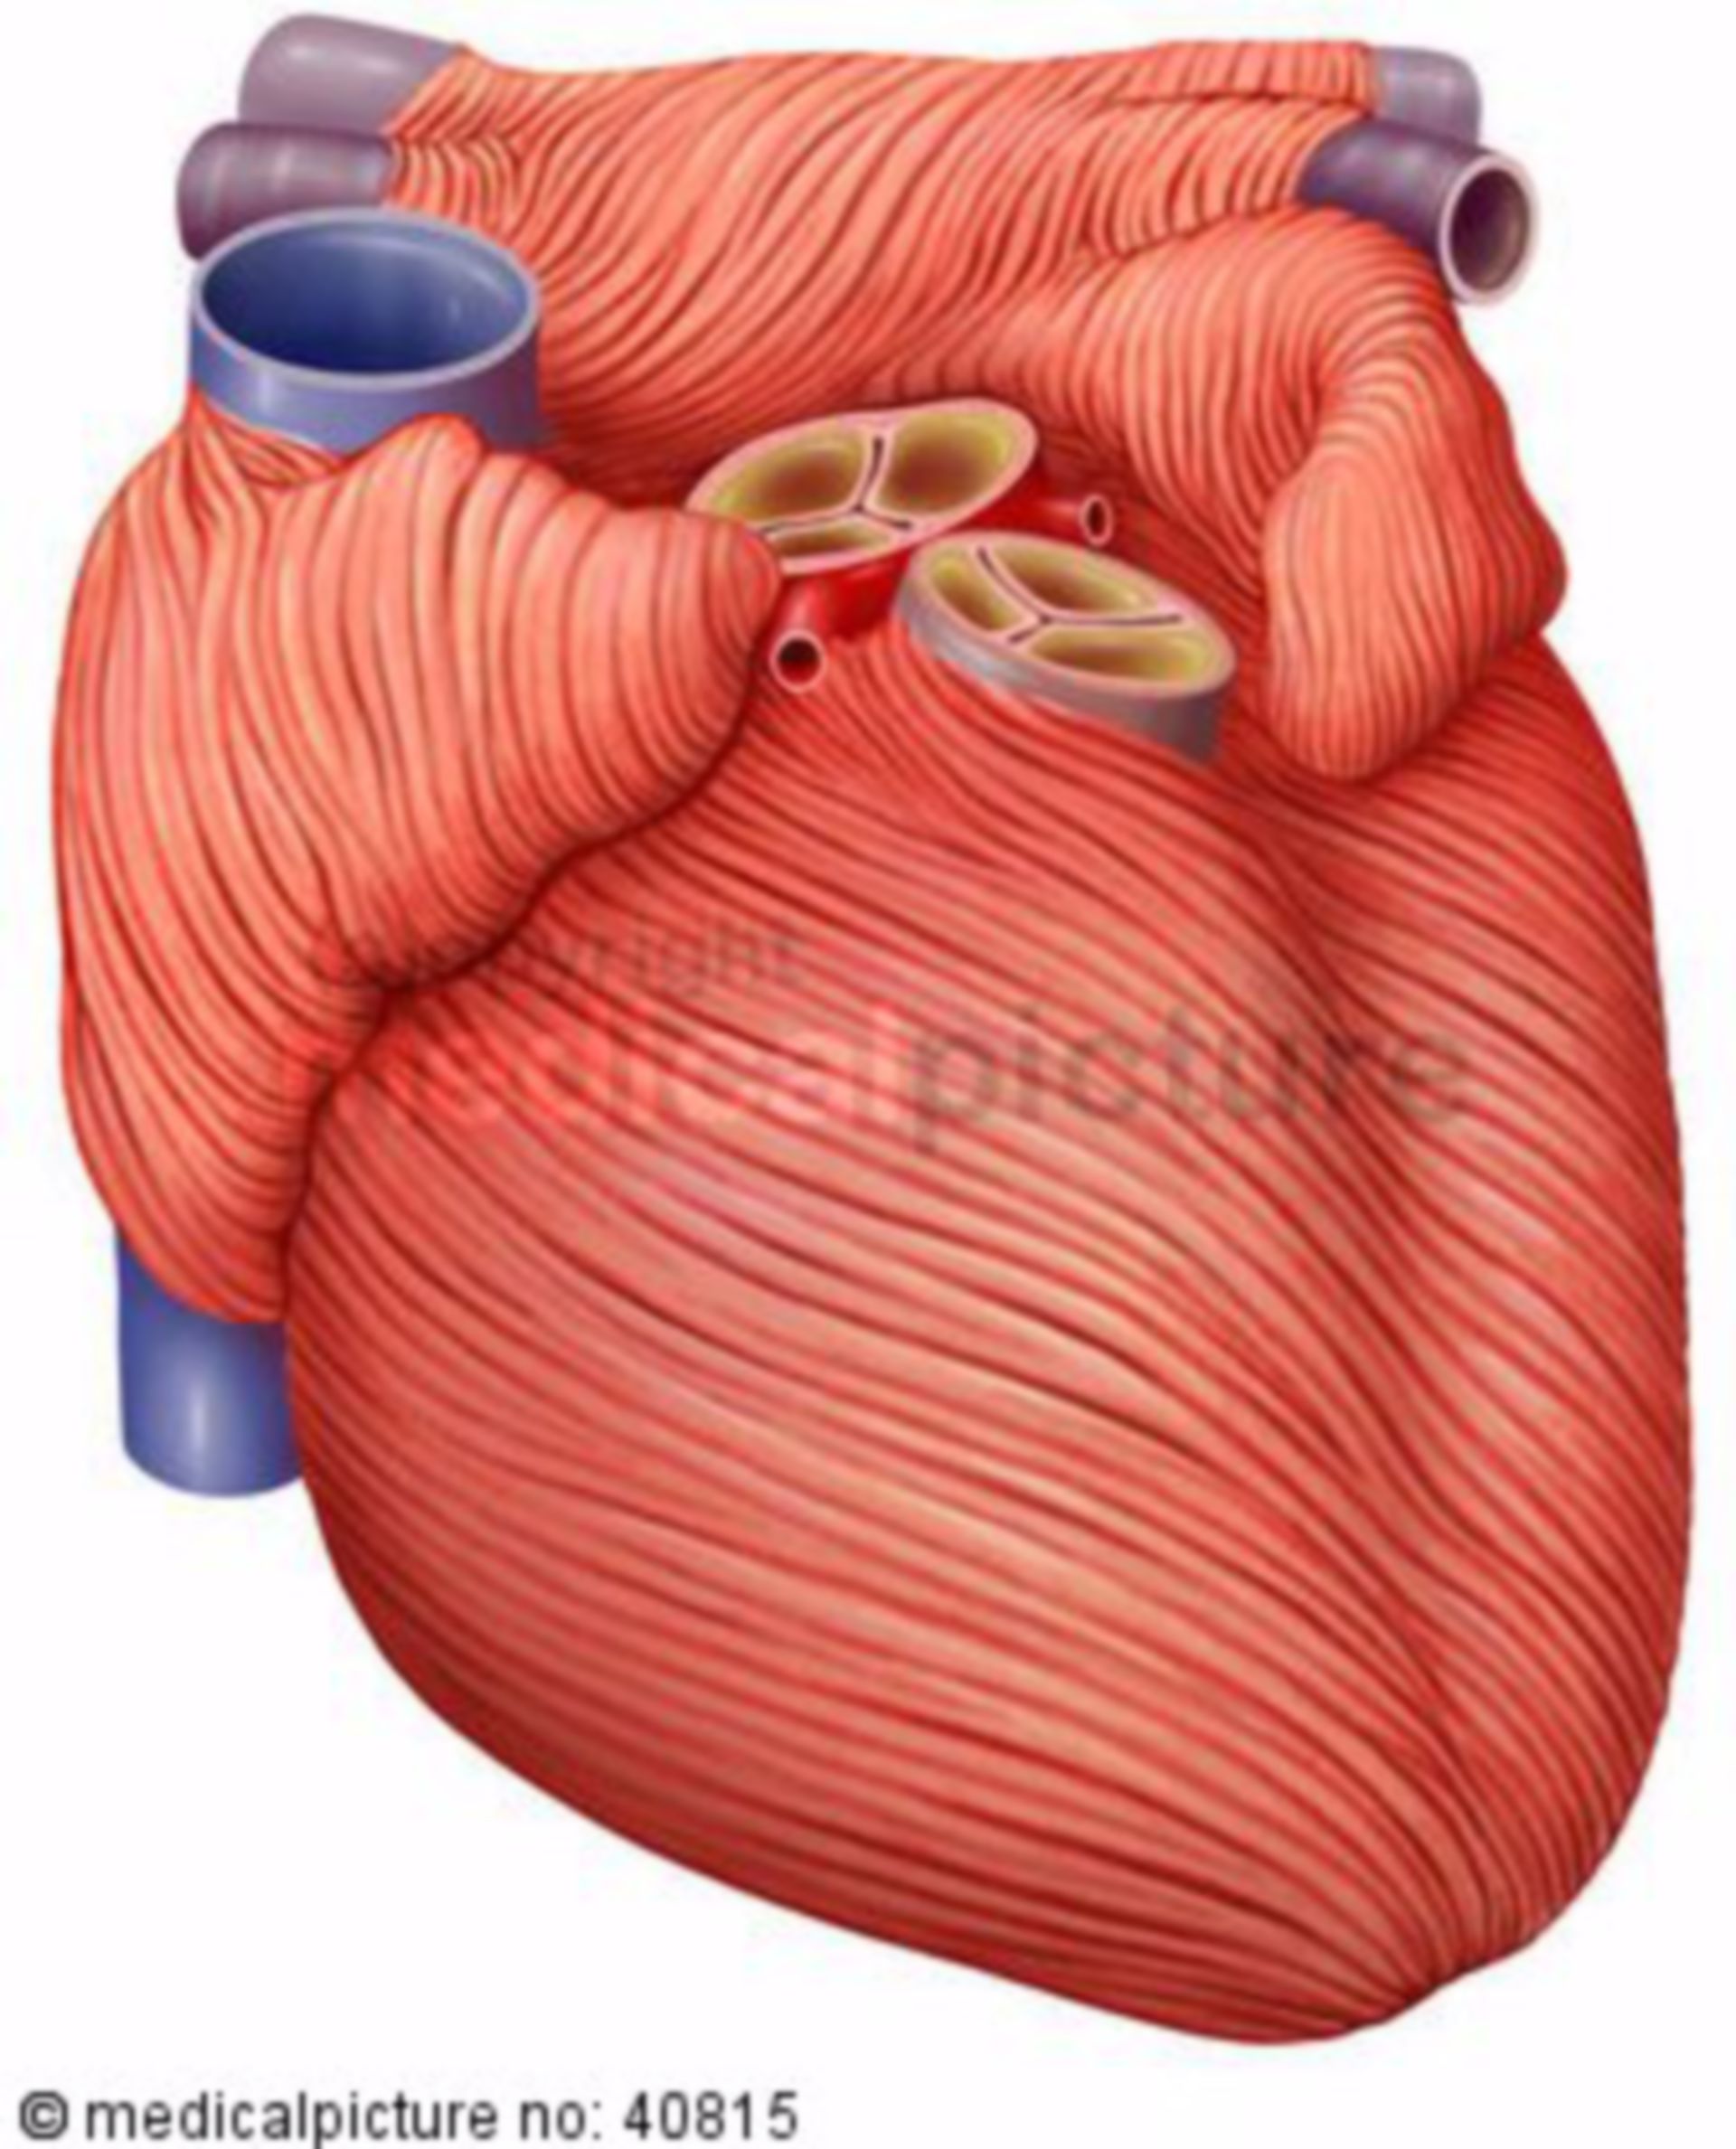 Heart musculature, myocardium